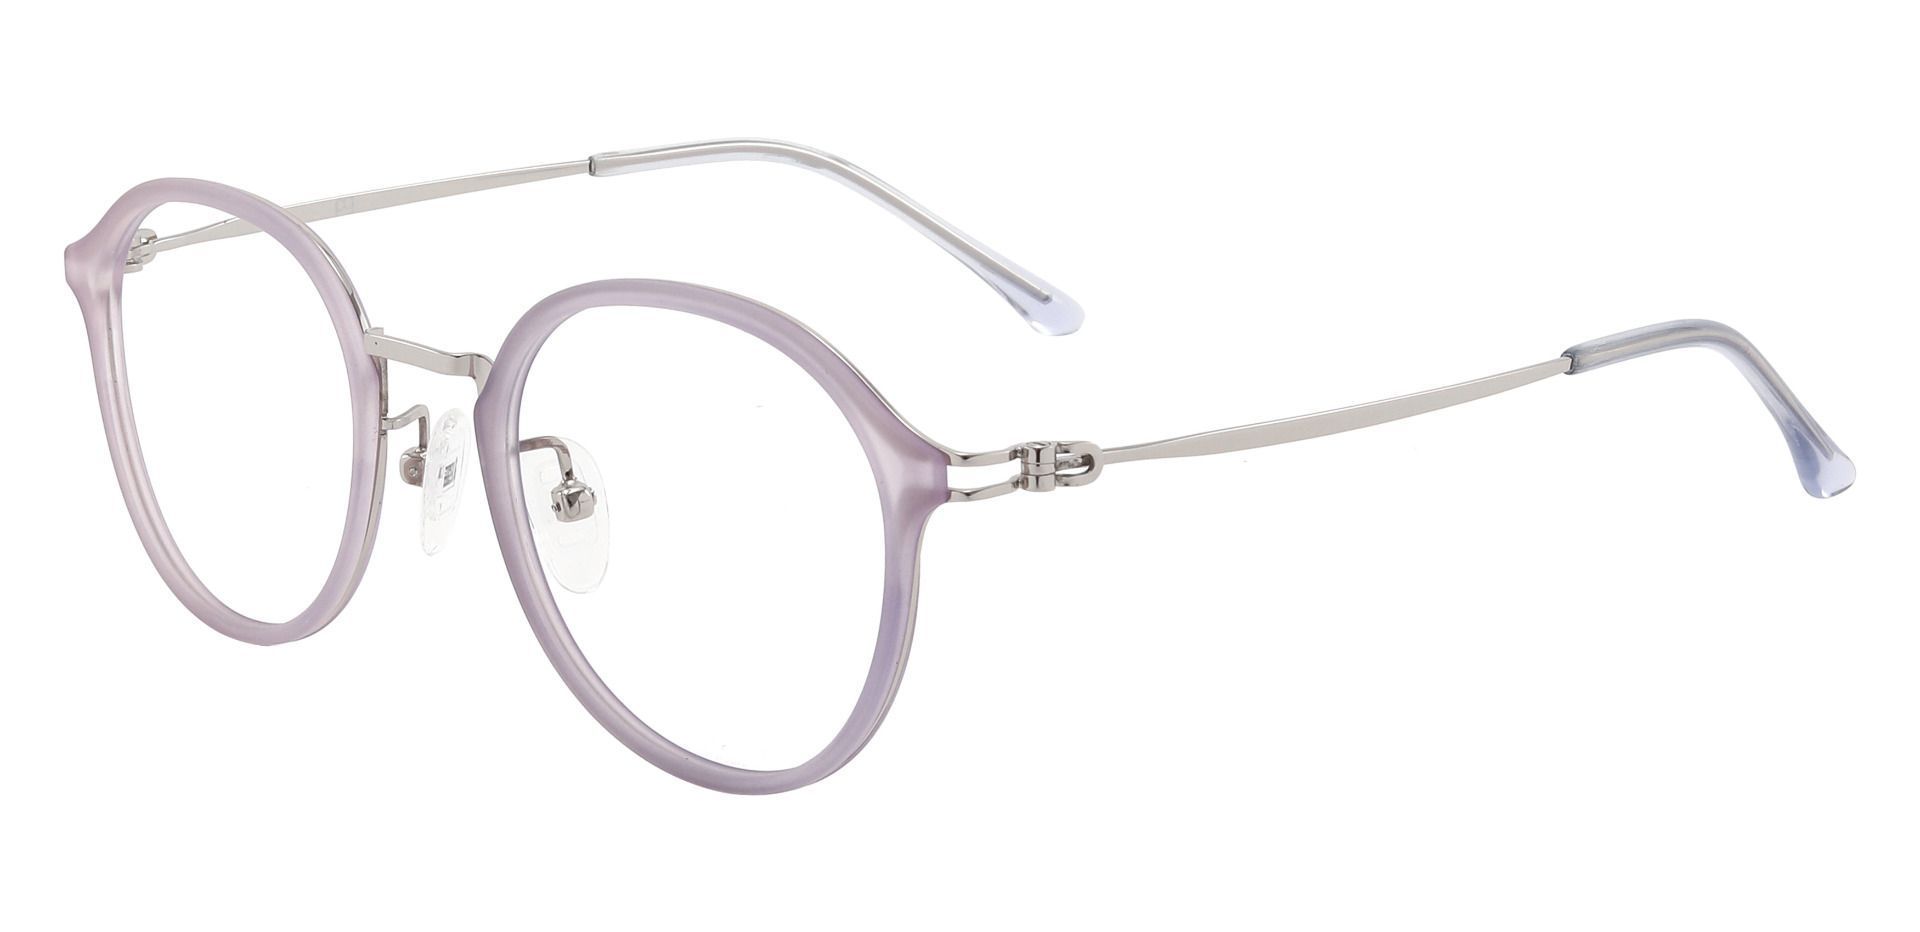 Billings Round Non-Rx Glasses - Purple